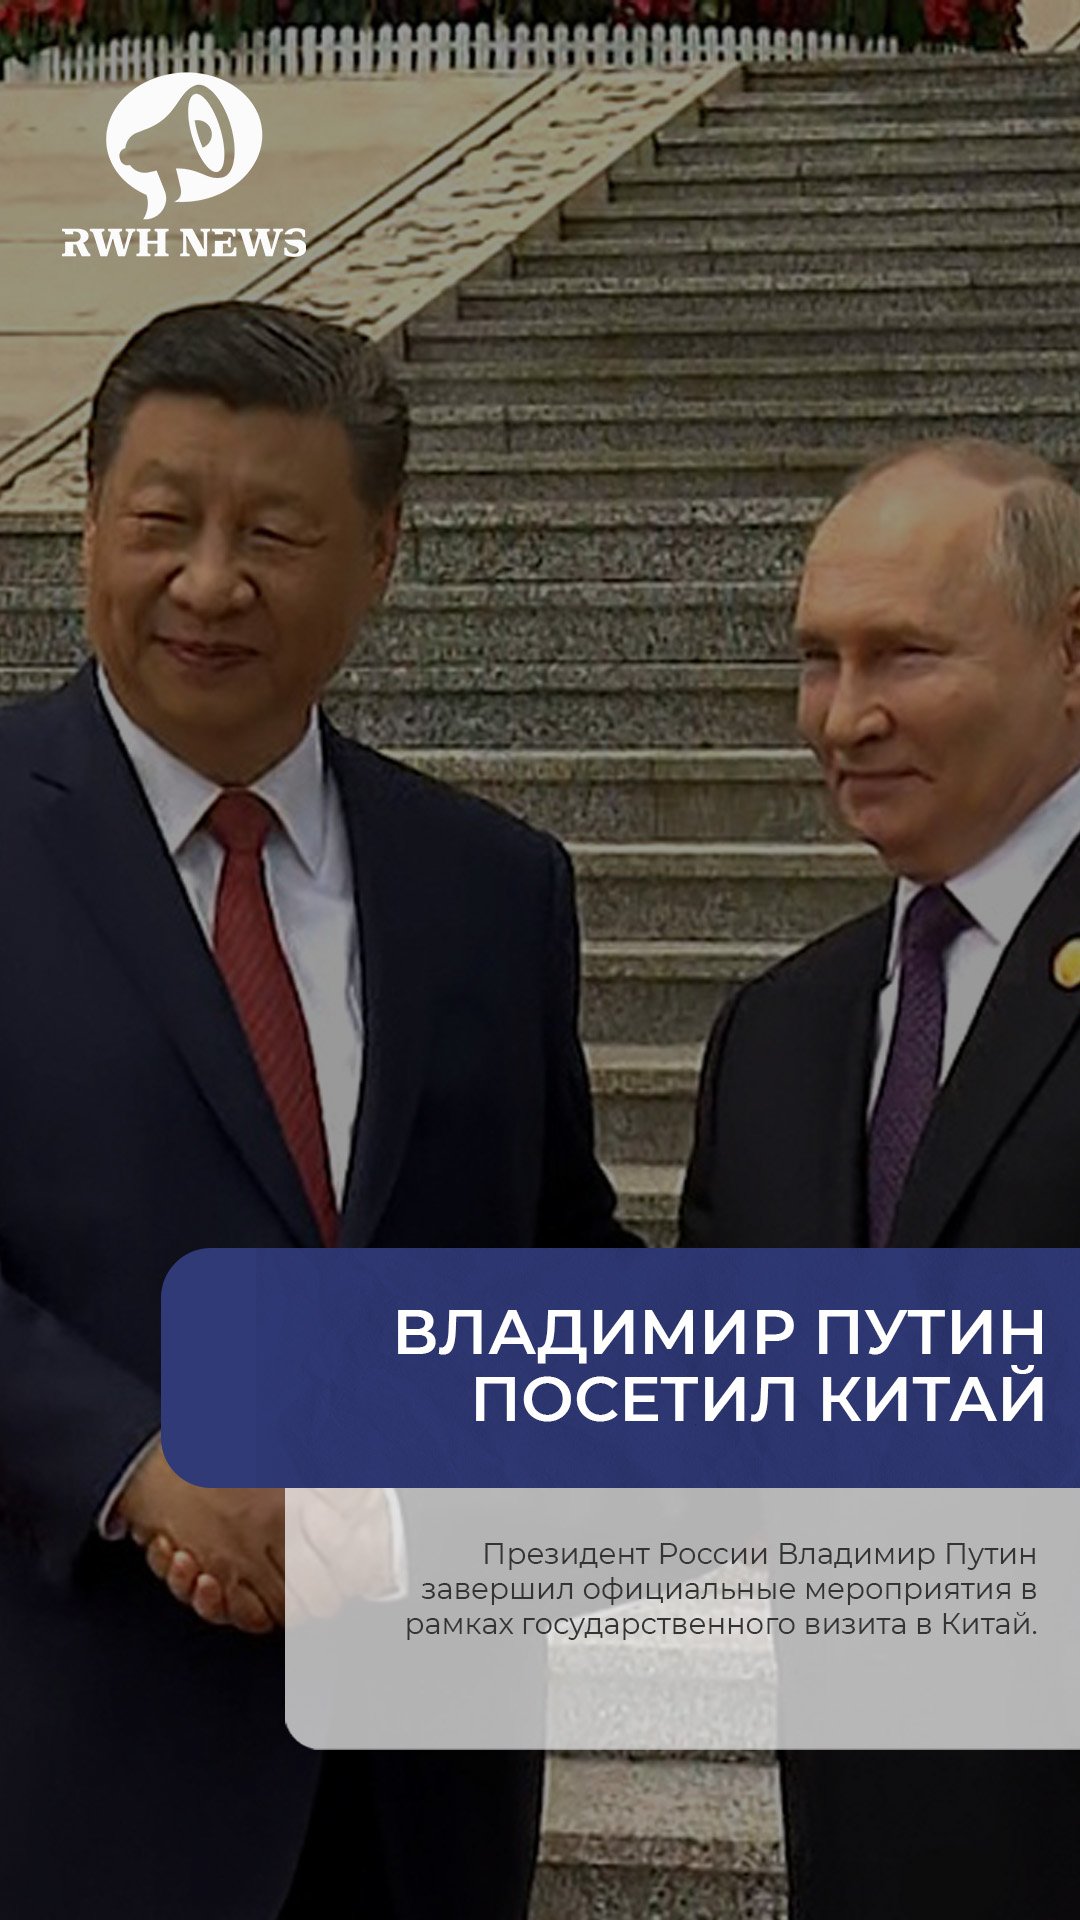 Путин посетил Китай